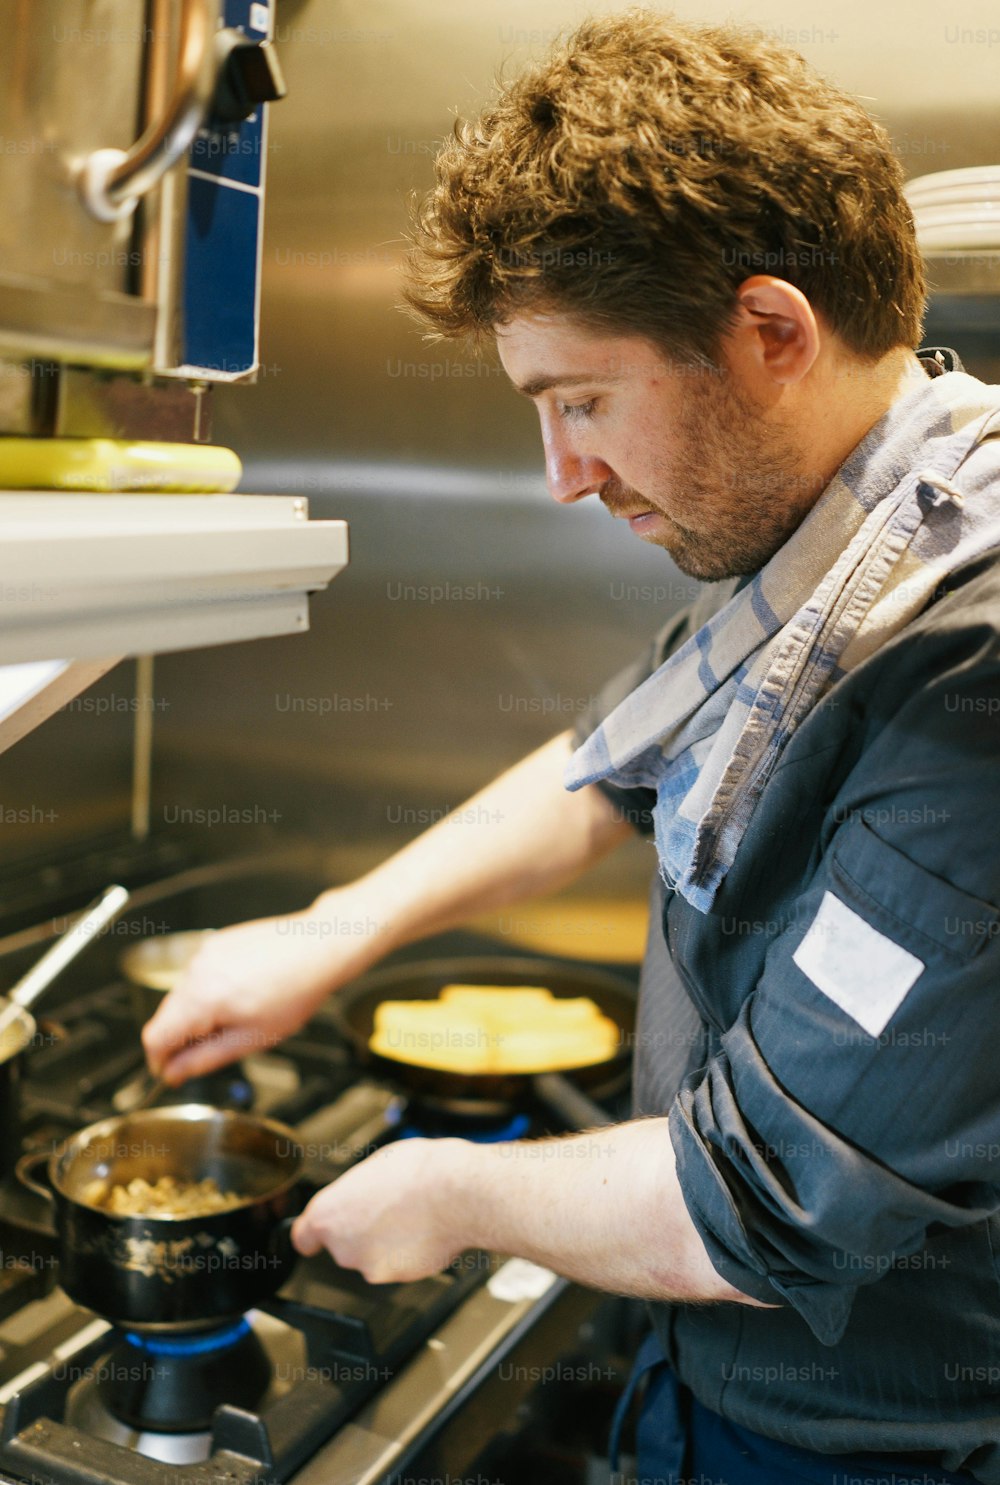 Un hombre cocinando comida en una estufa en una cocina